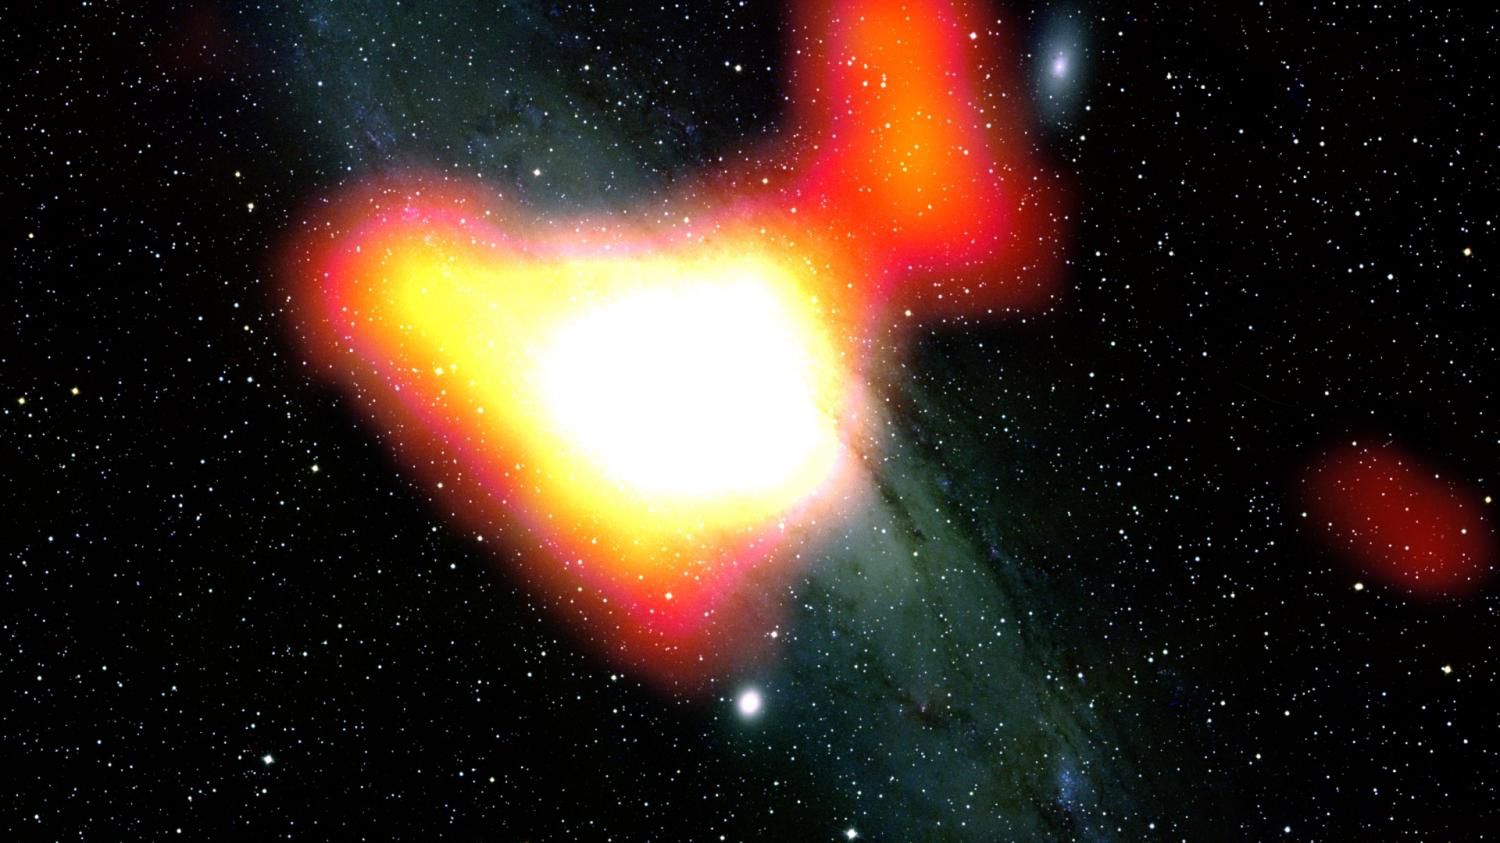 «Ферми» находит то, что может оказаться темной материей, в галактике Андромеда